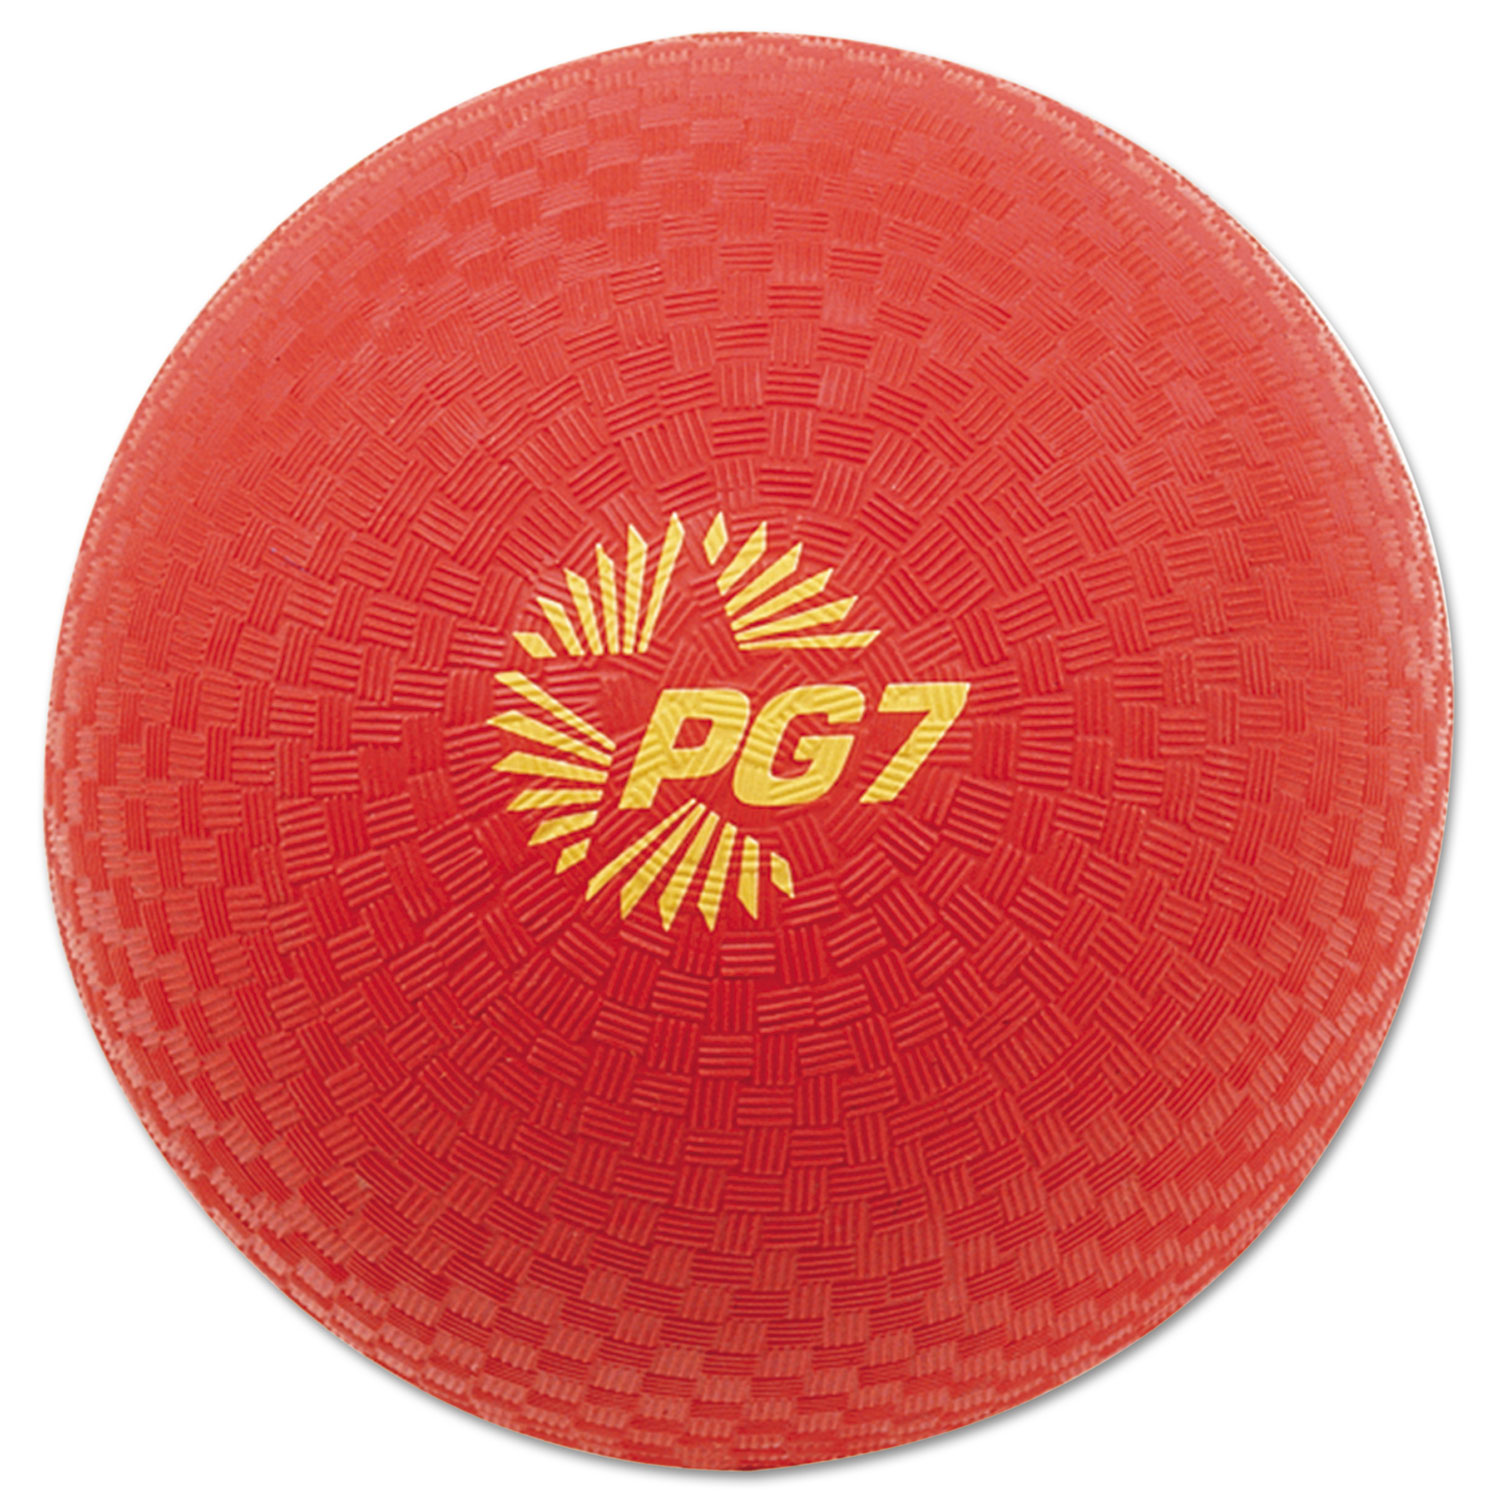 Playground Ball, 7 Diameter, Red